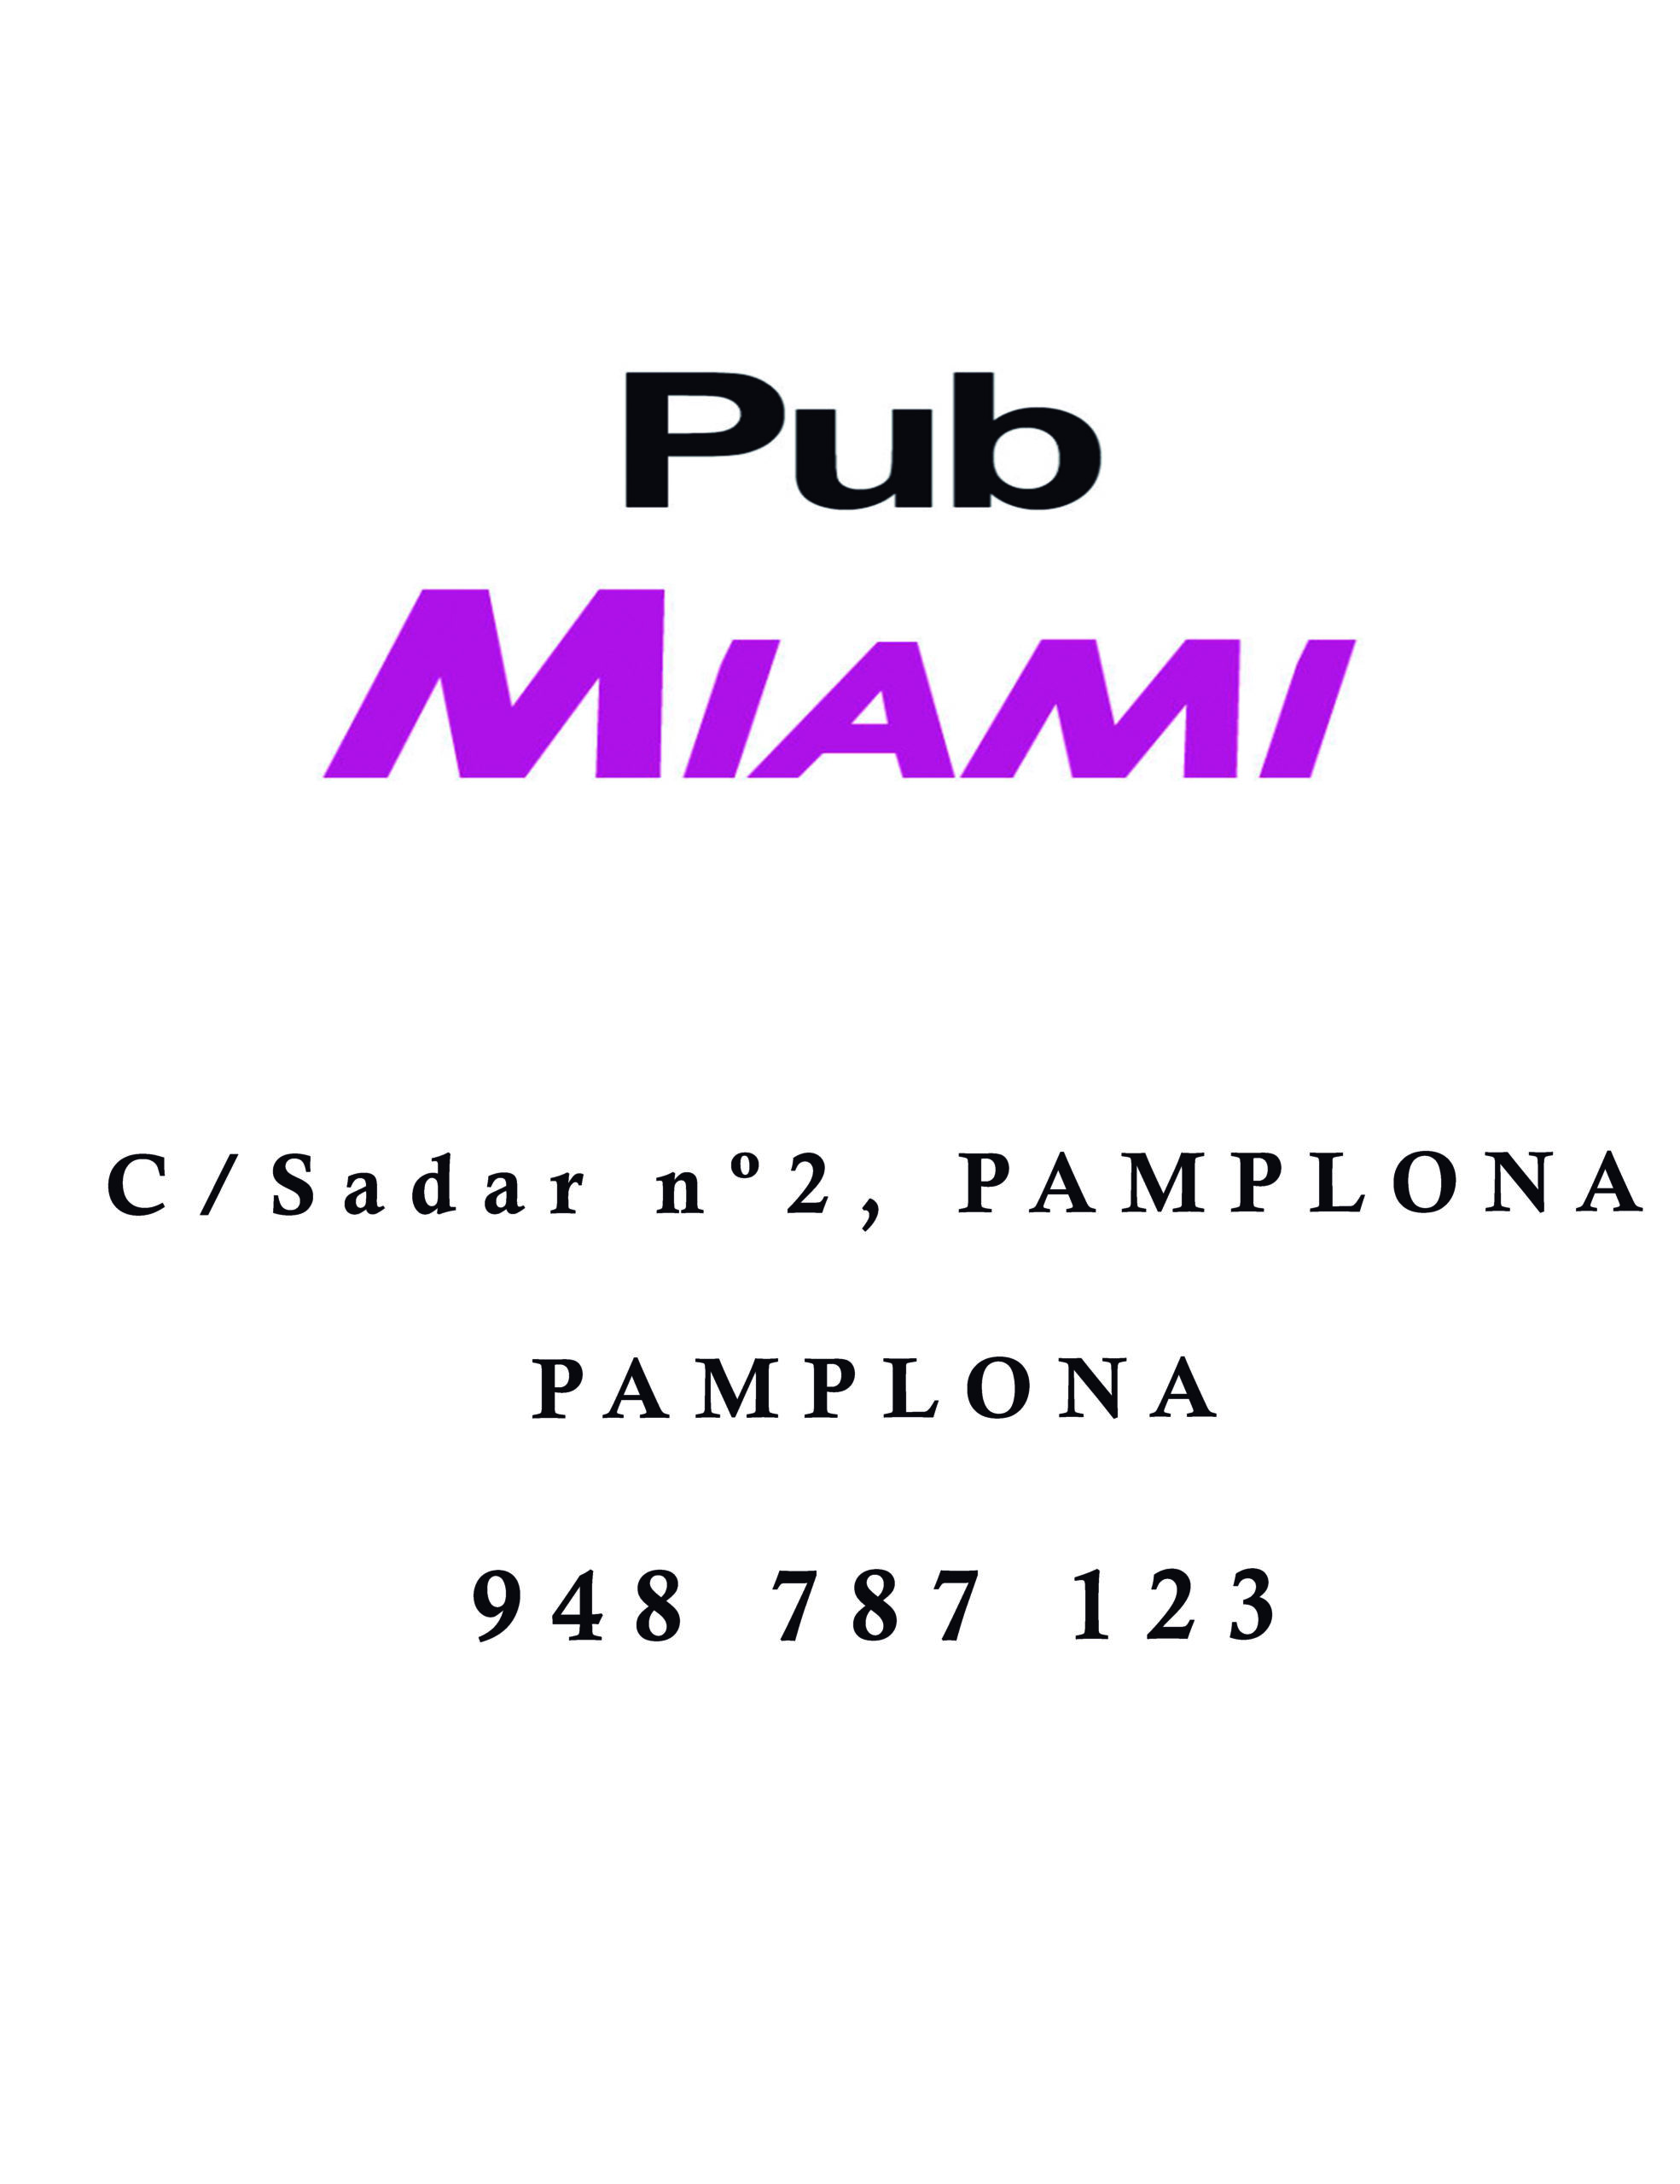 Pub Miami